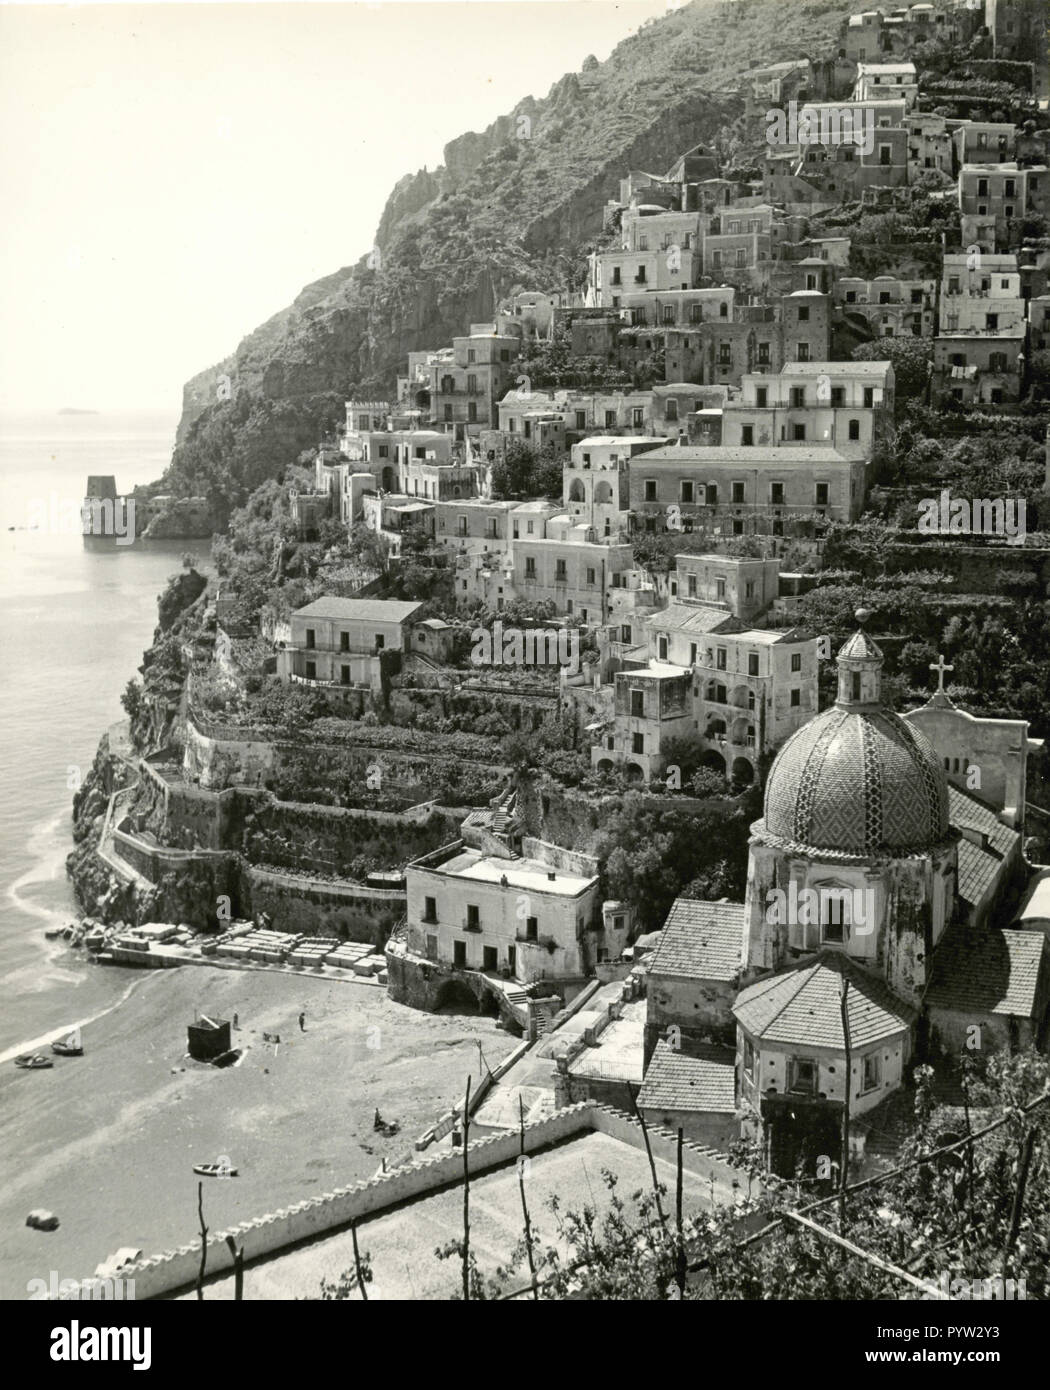 View of Positano, Italy 1950s Stock Photo - Alamy